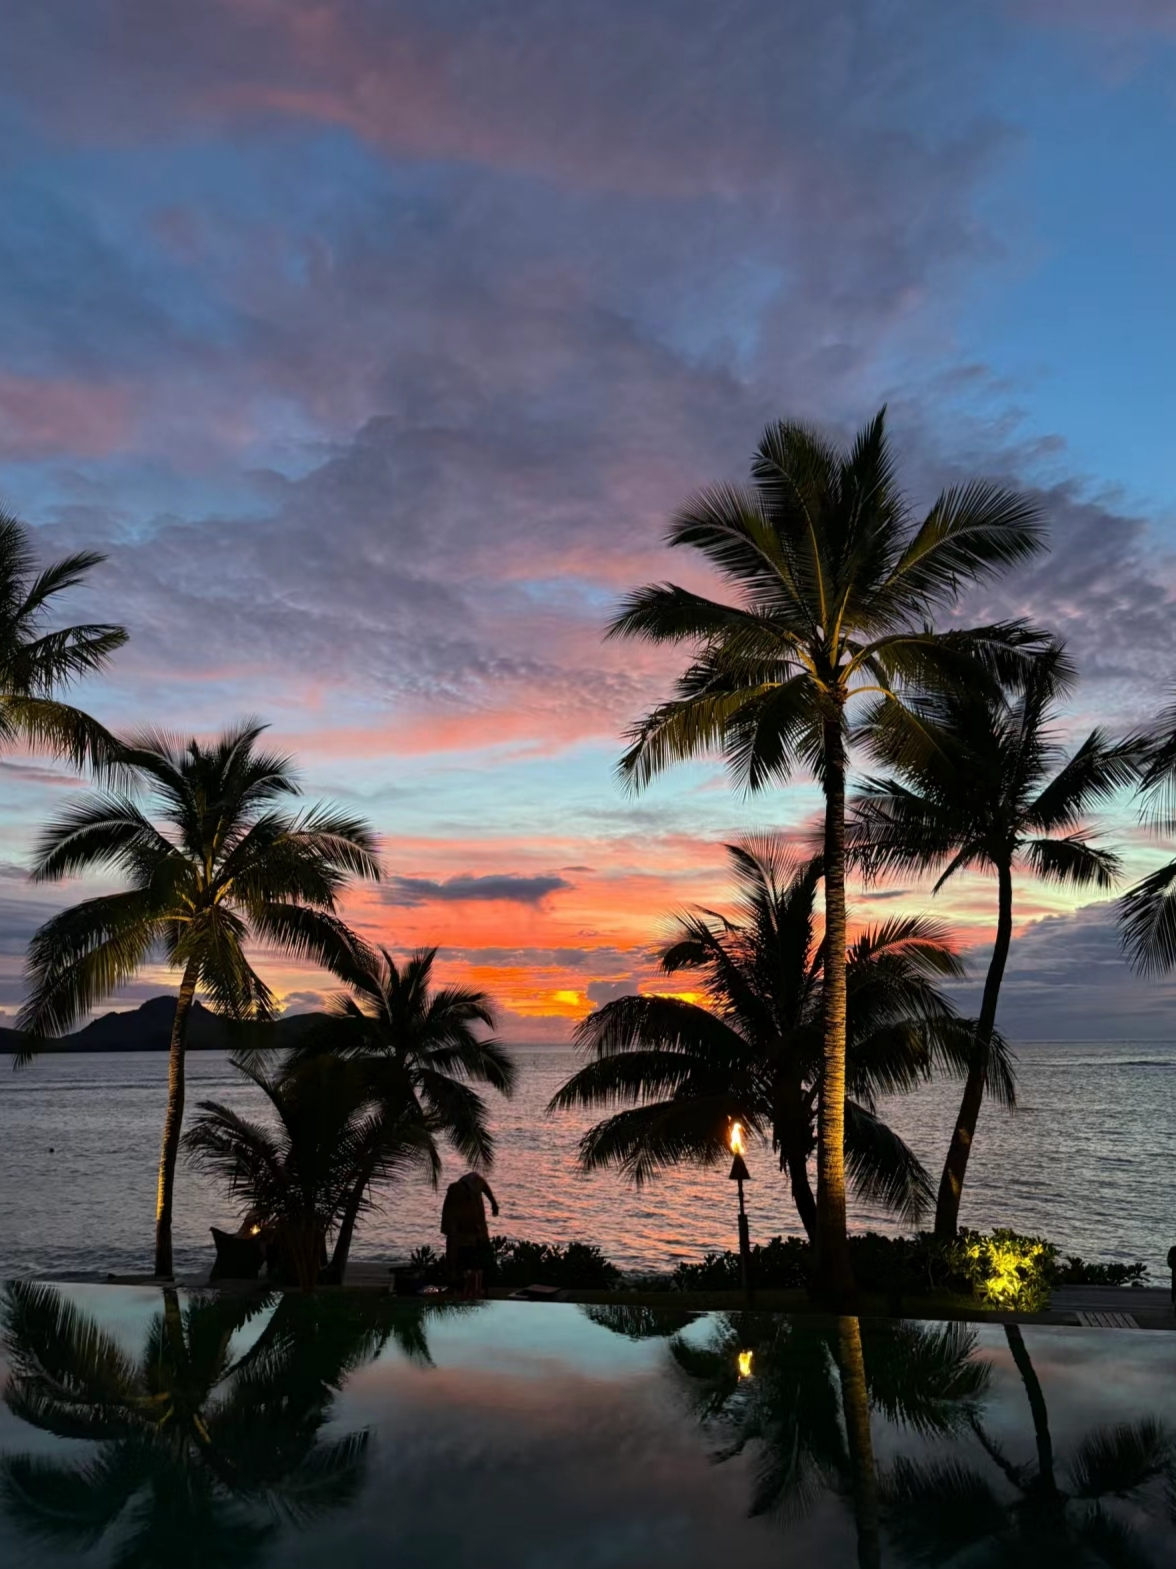 来自斐济天空的视觉盛宴 sunset happy hour ~ 被这夕阳震撼住了也太太太美了吧 #斐